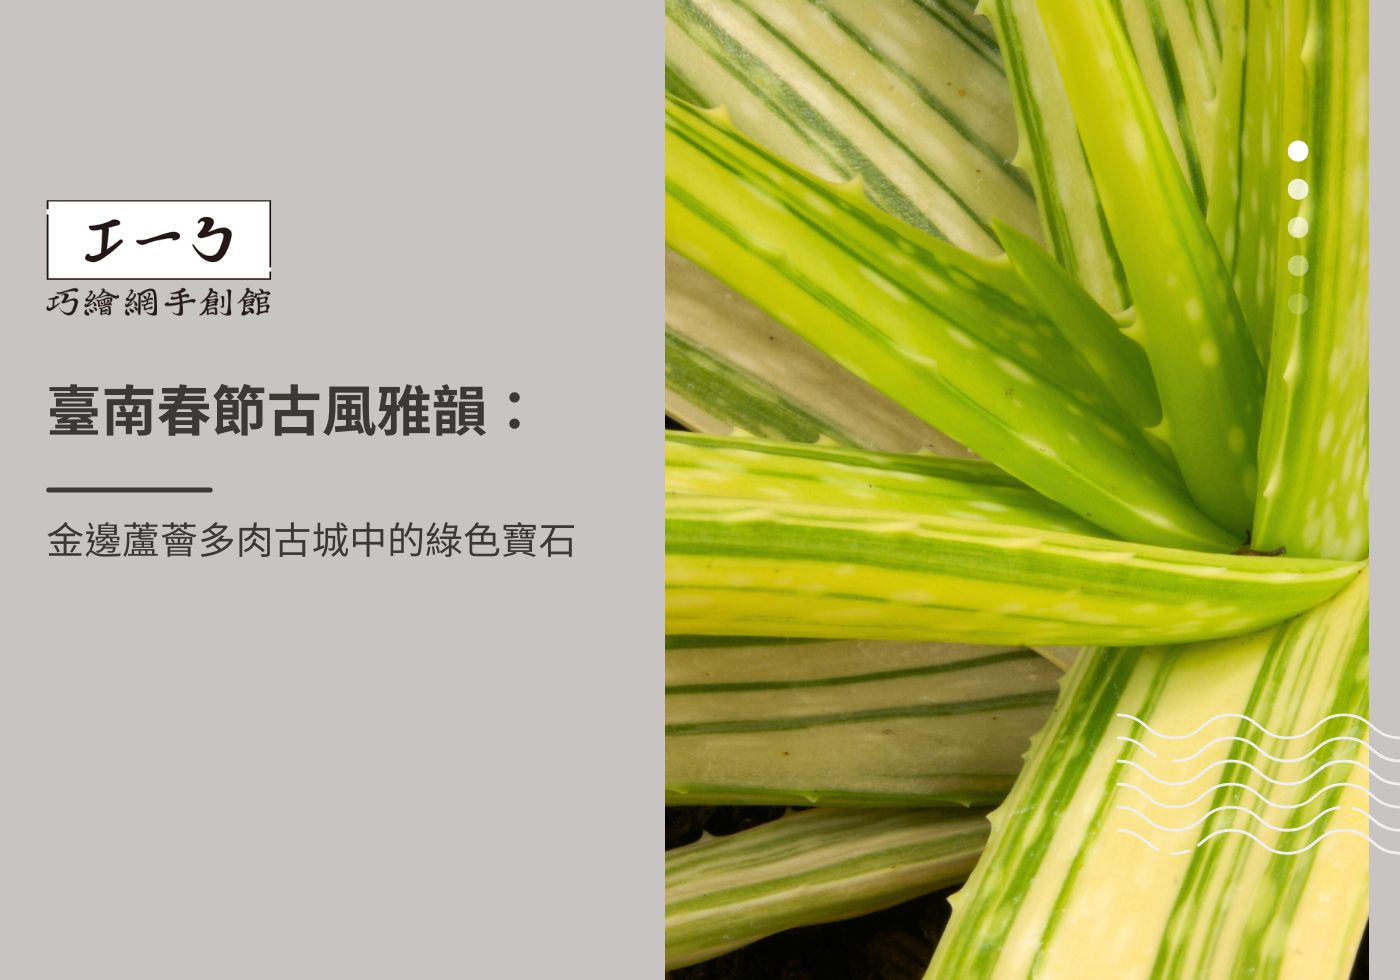 您目前正在查看 臺南春節古風雅韻：金邊蘆薈多肉古城中的綠色寶石